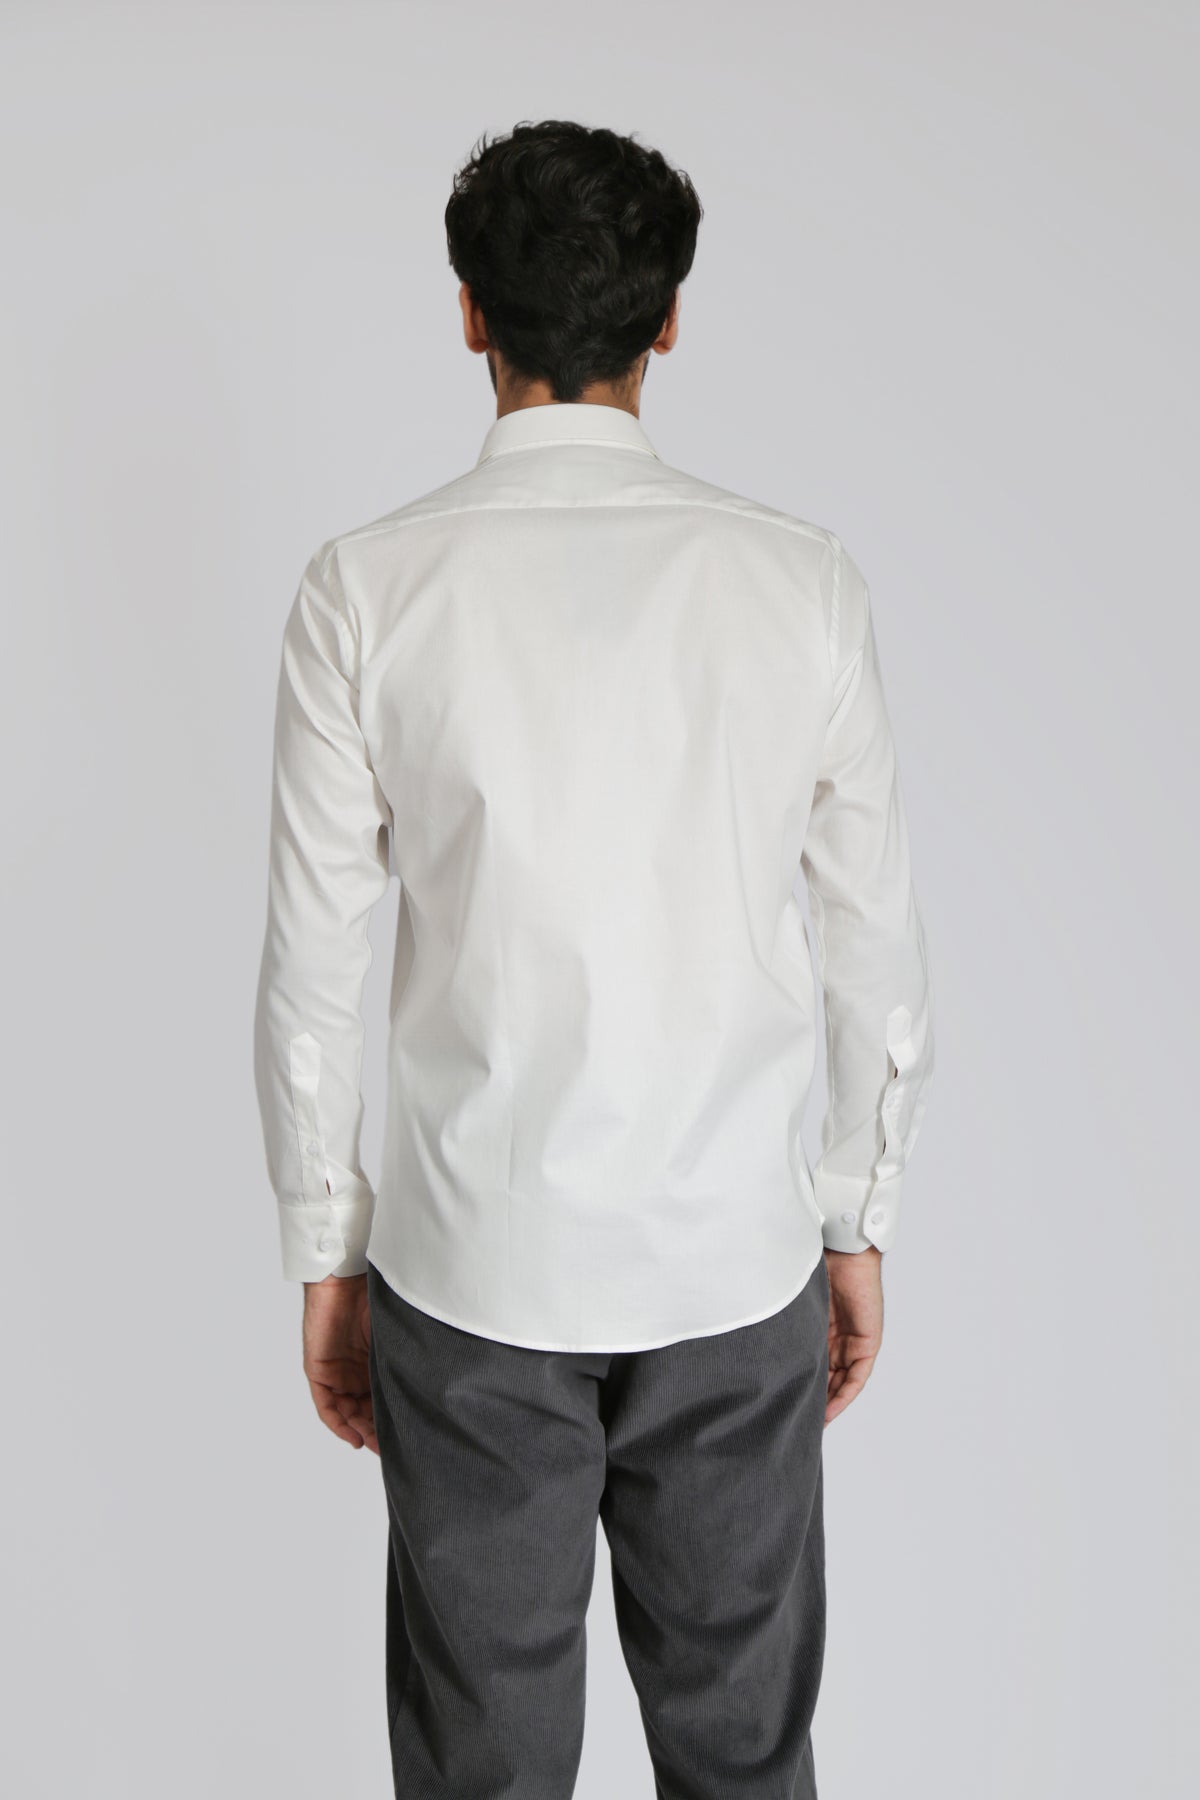 Regular Fit Cotton Shirt